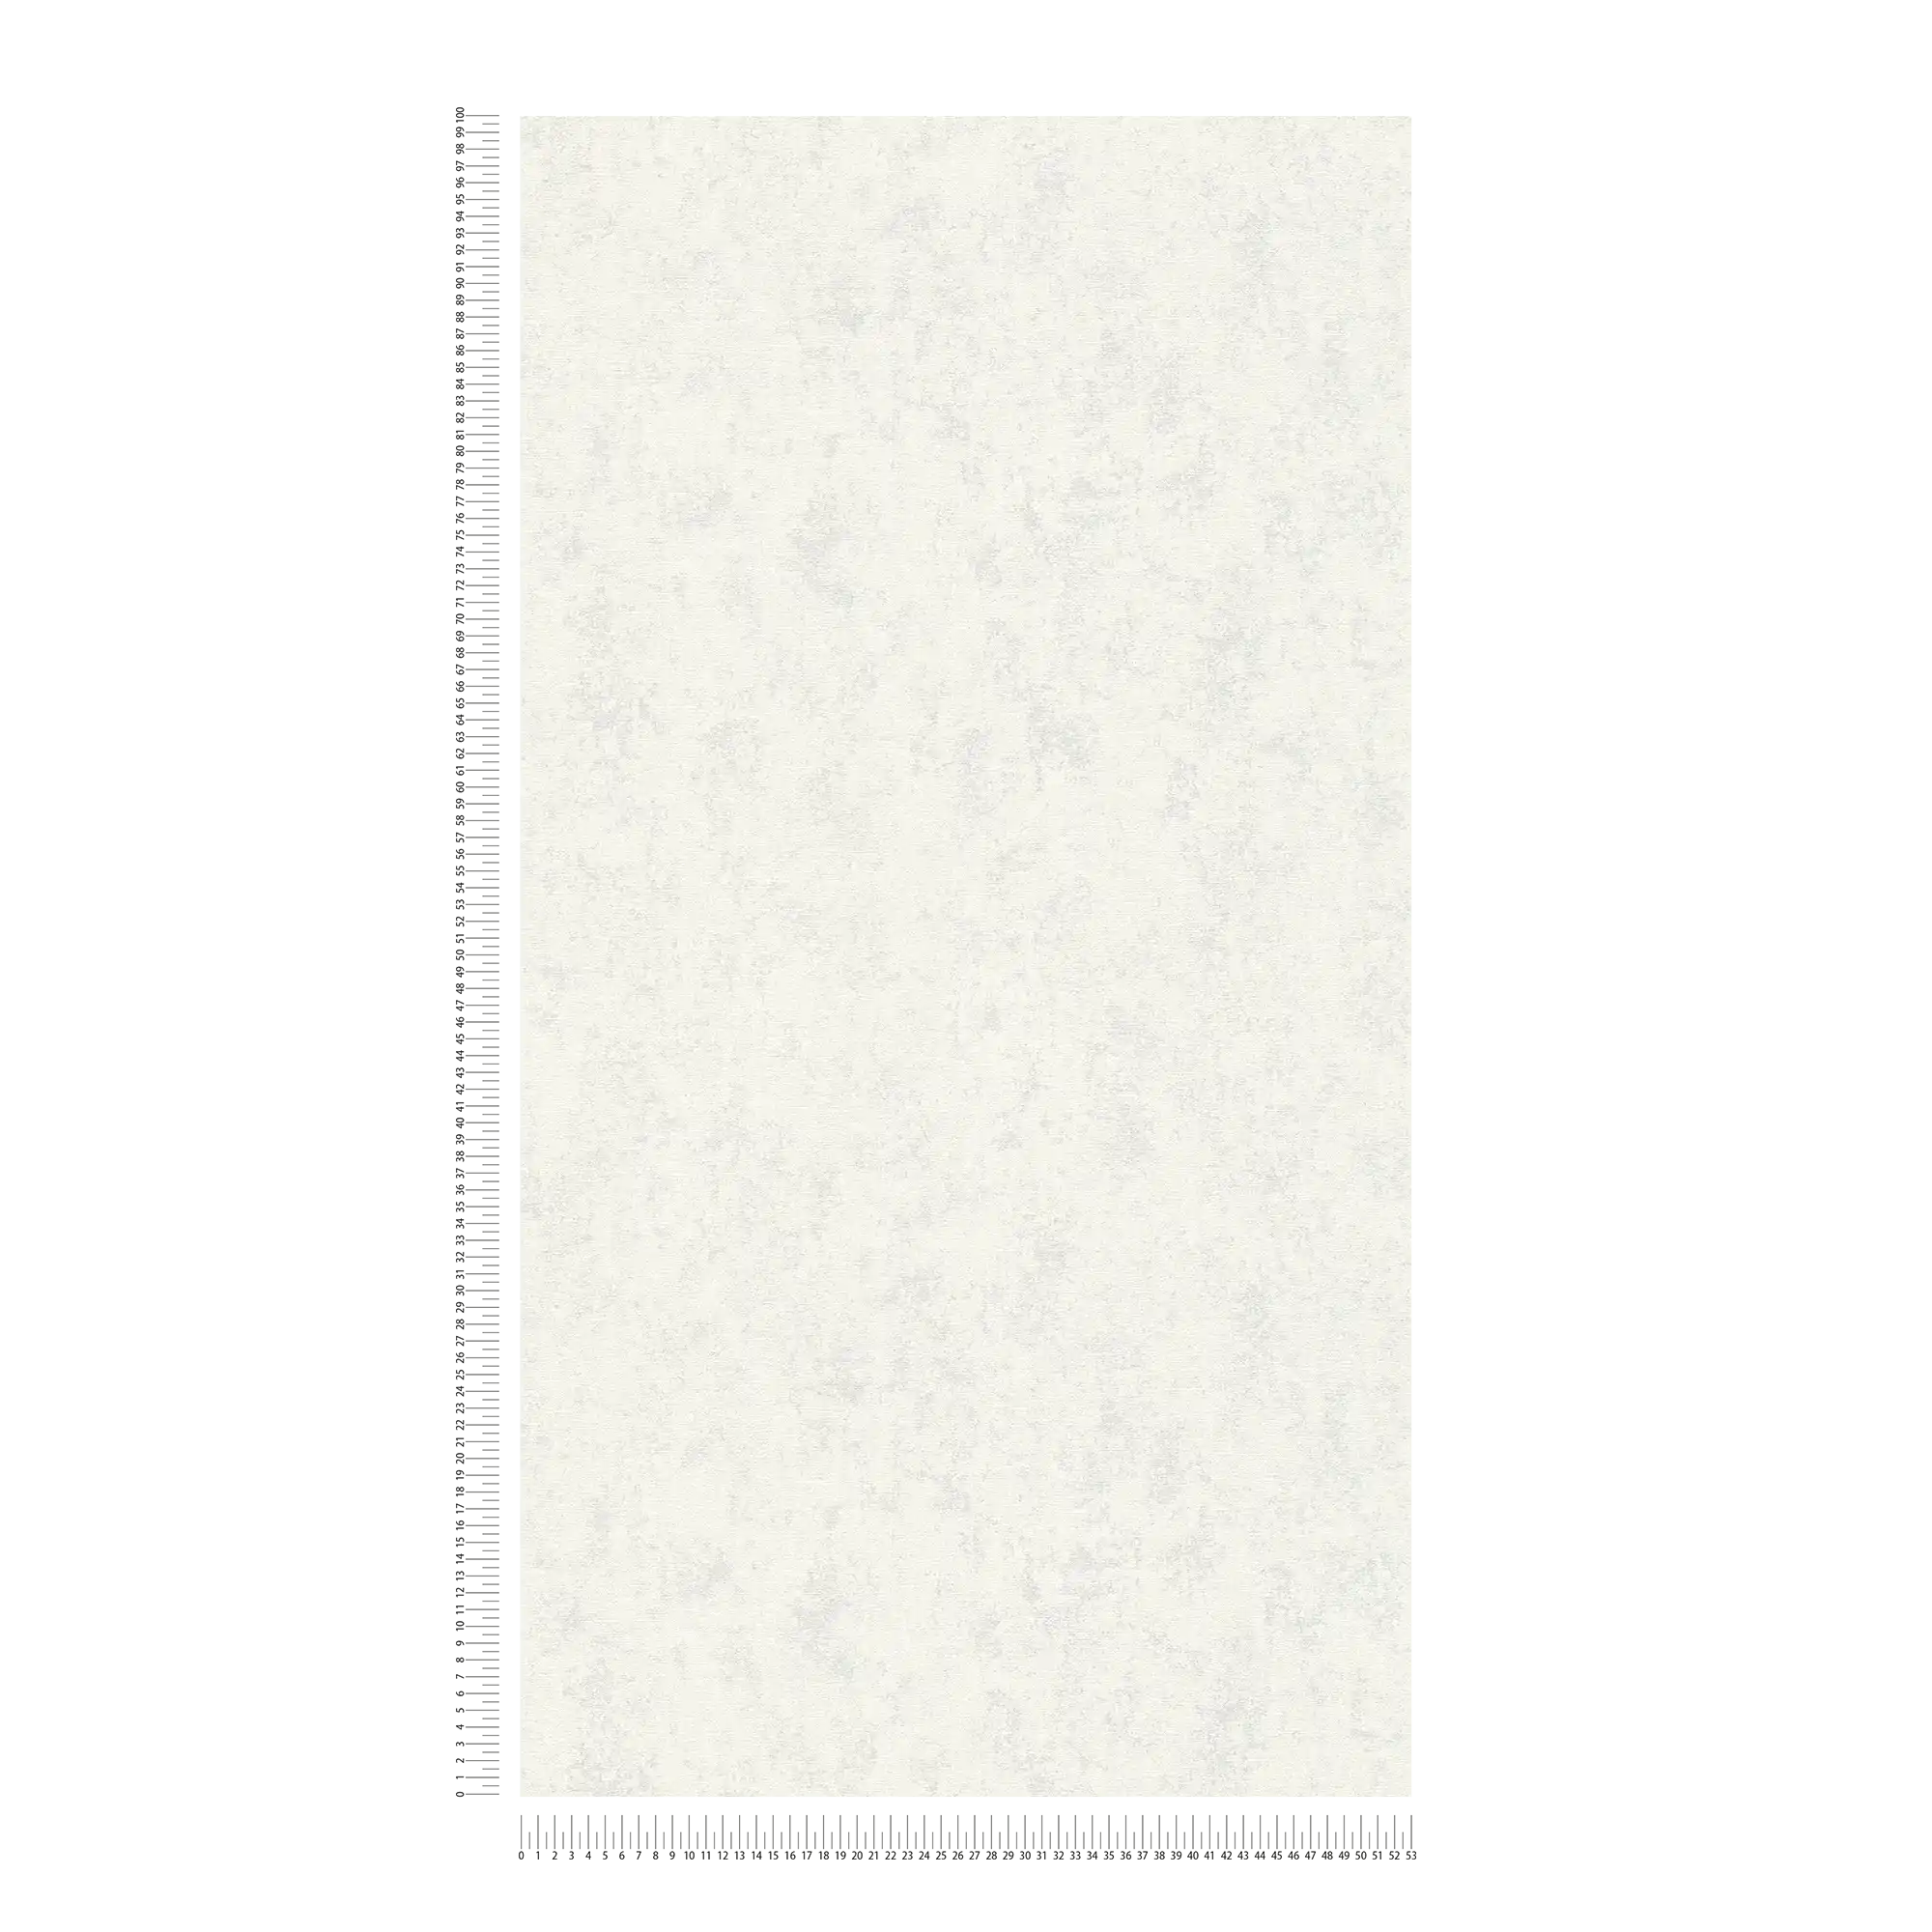             Scandi style wallpaper uni structure design - grey, white
        